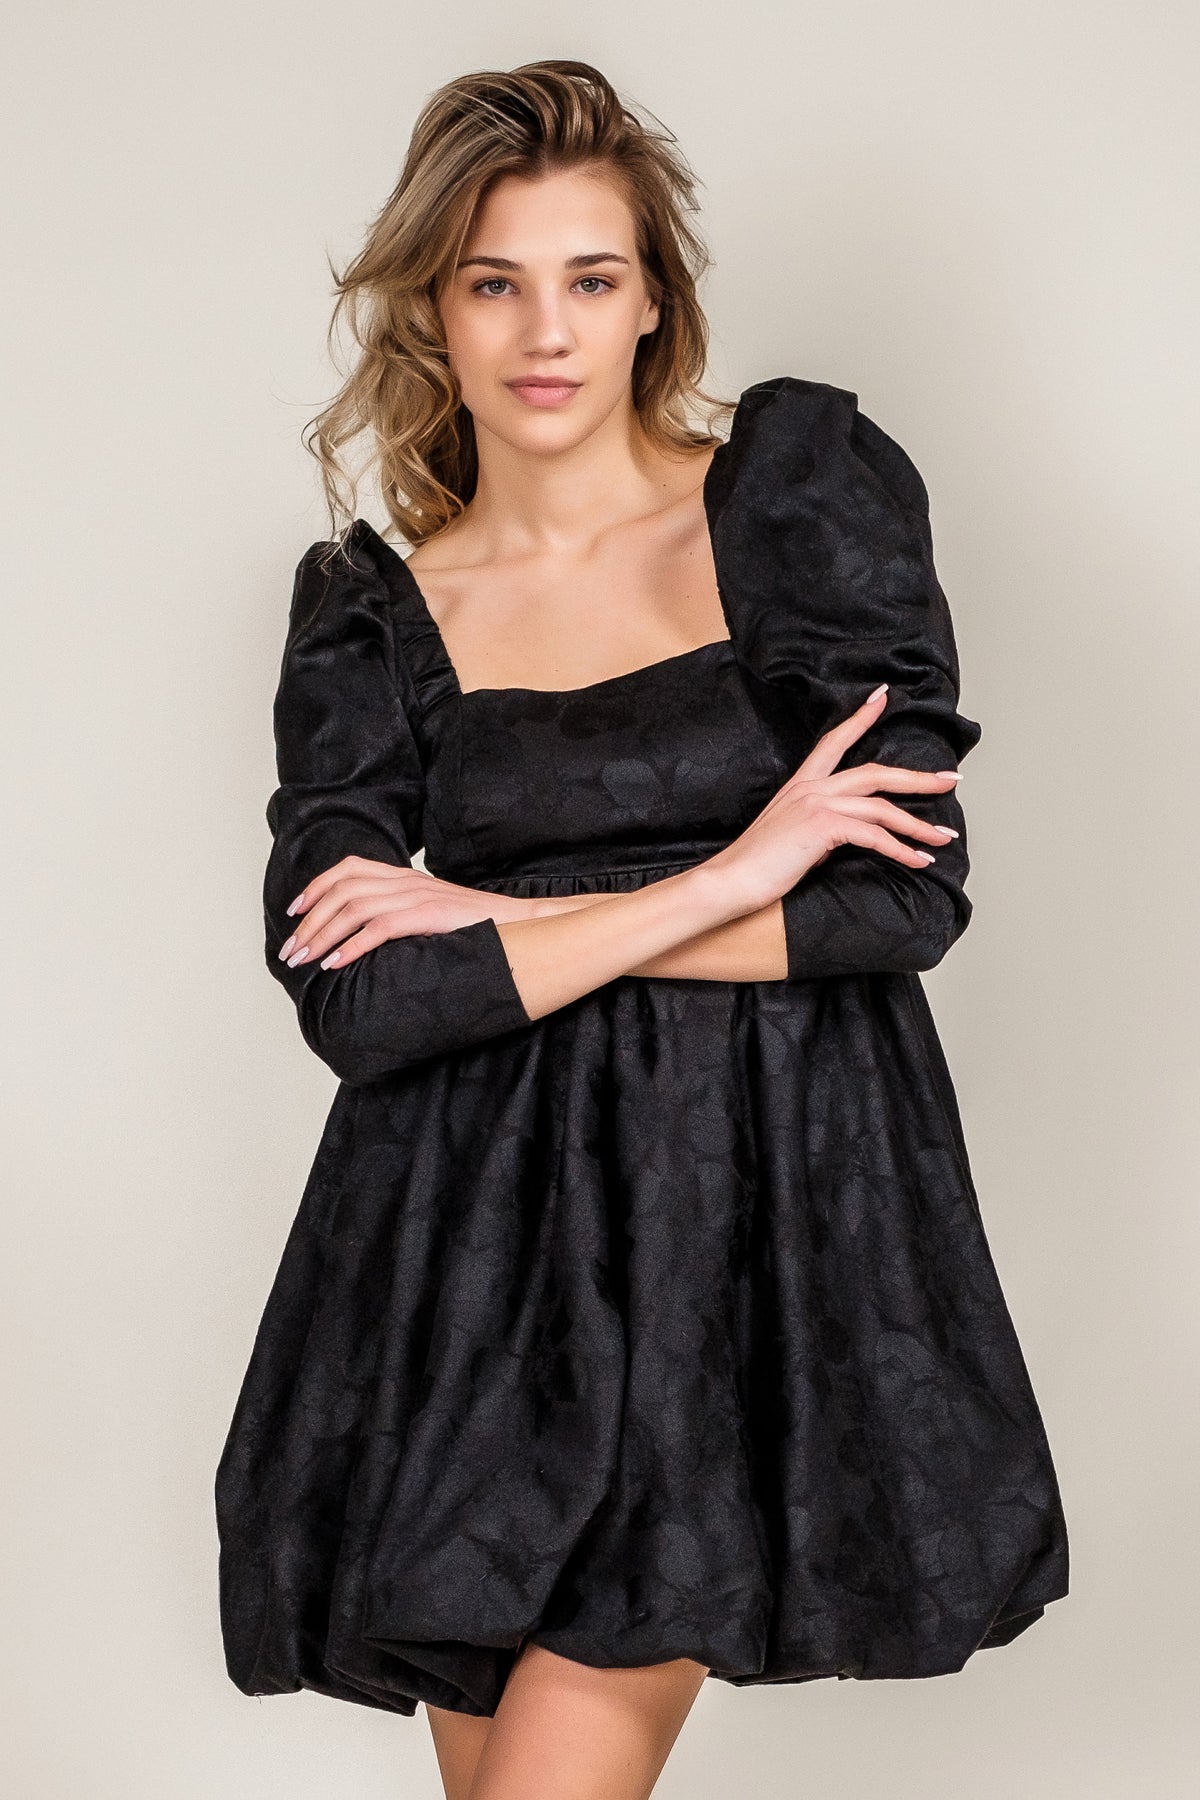 short modern black dress long sleeves high waist open back close up